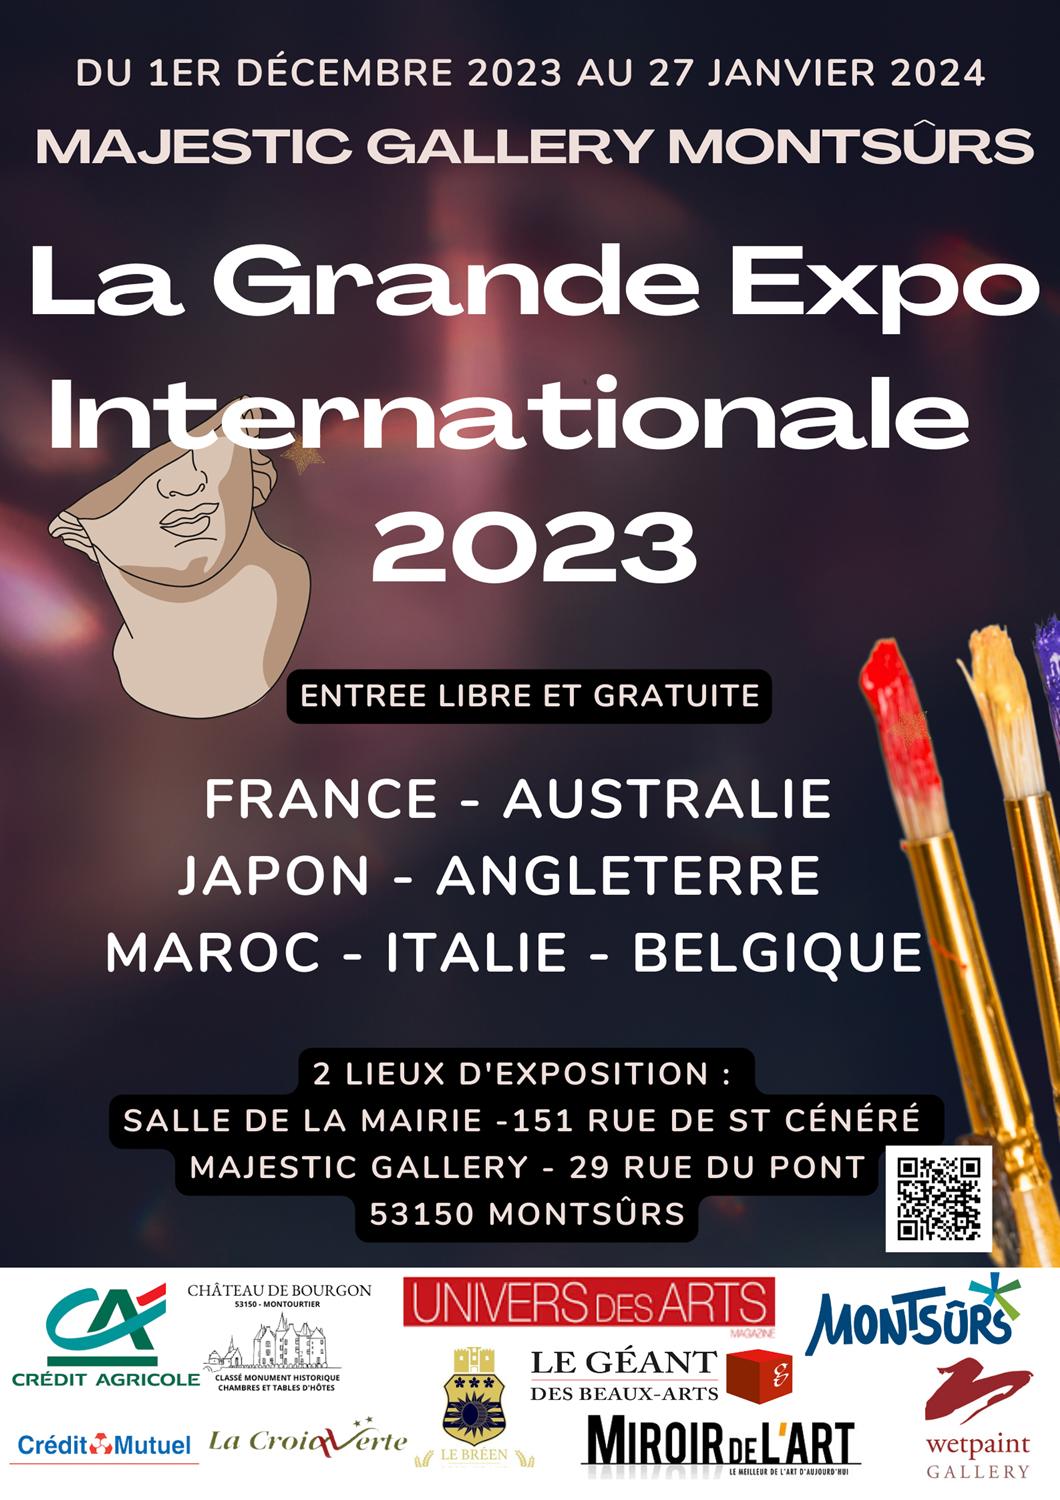 La Grande Expo Internationale 2023